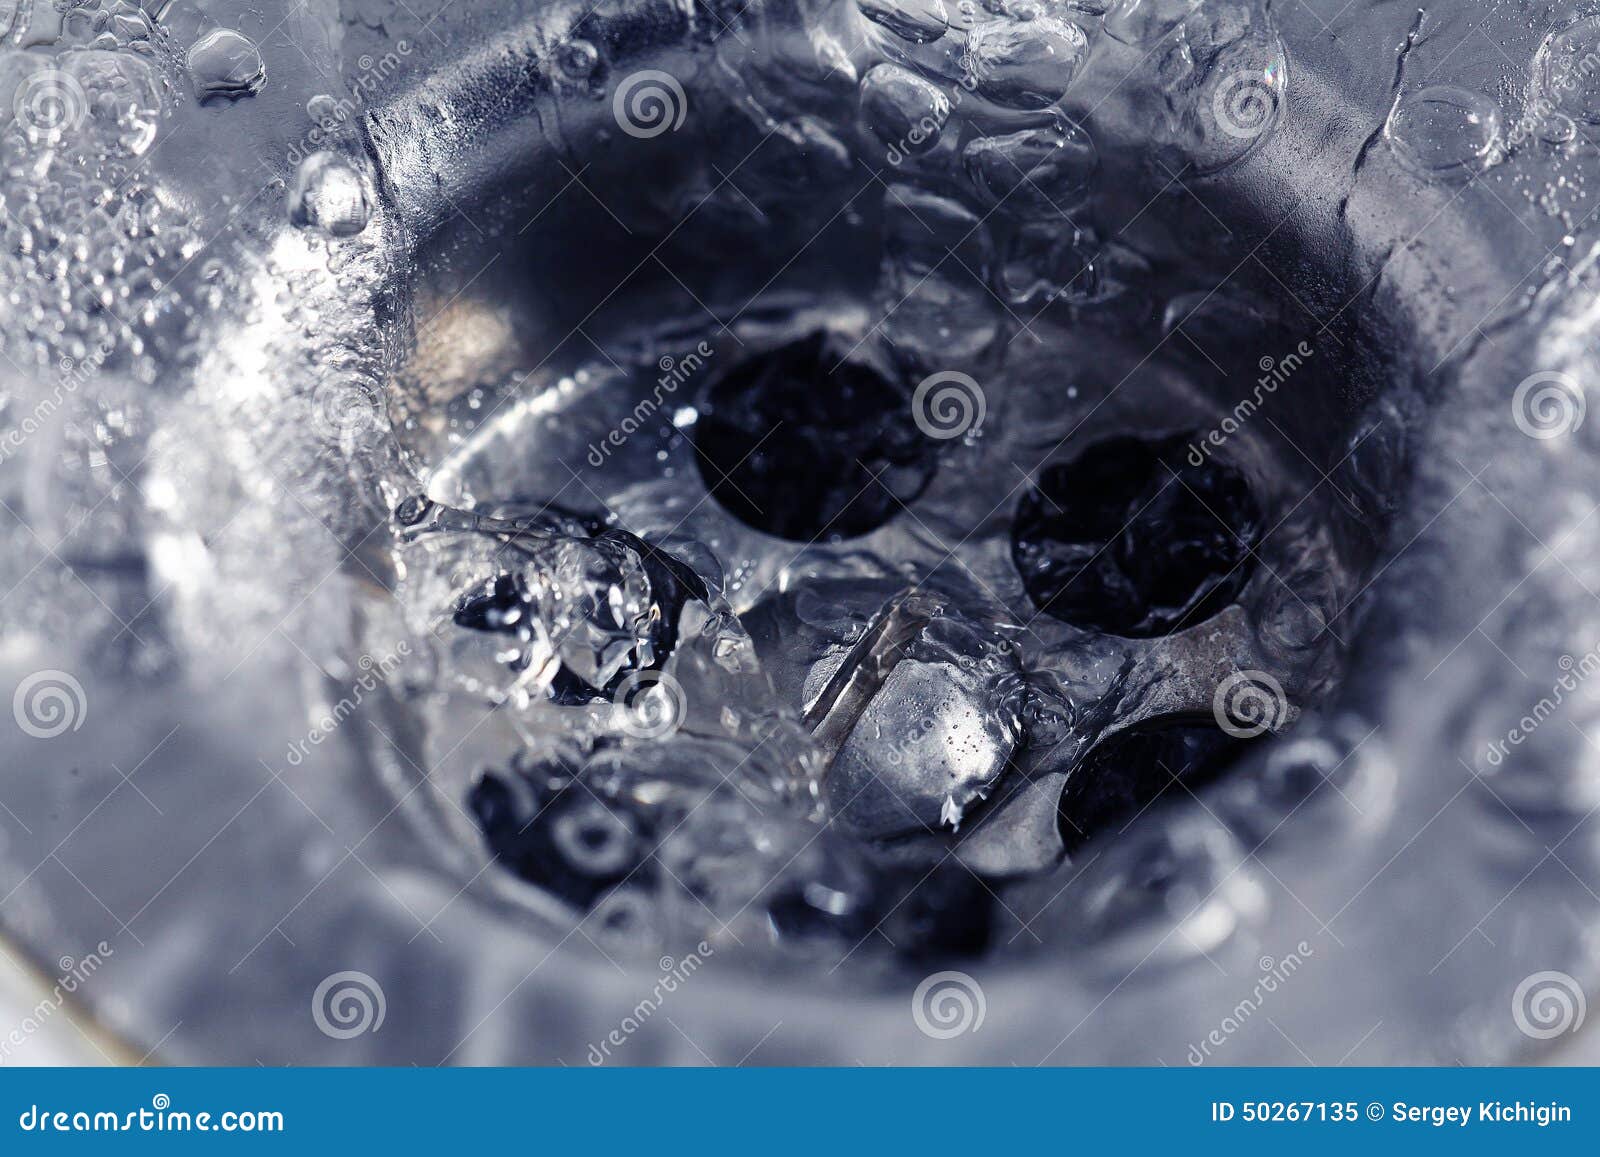 wash water drainage